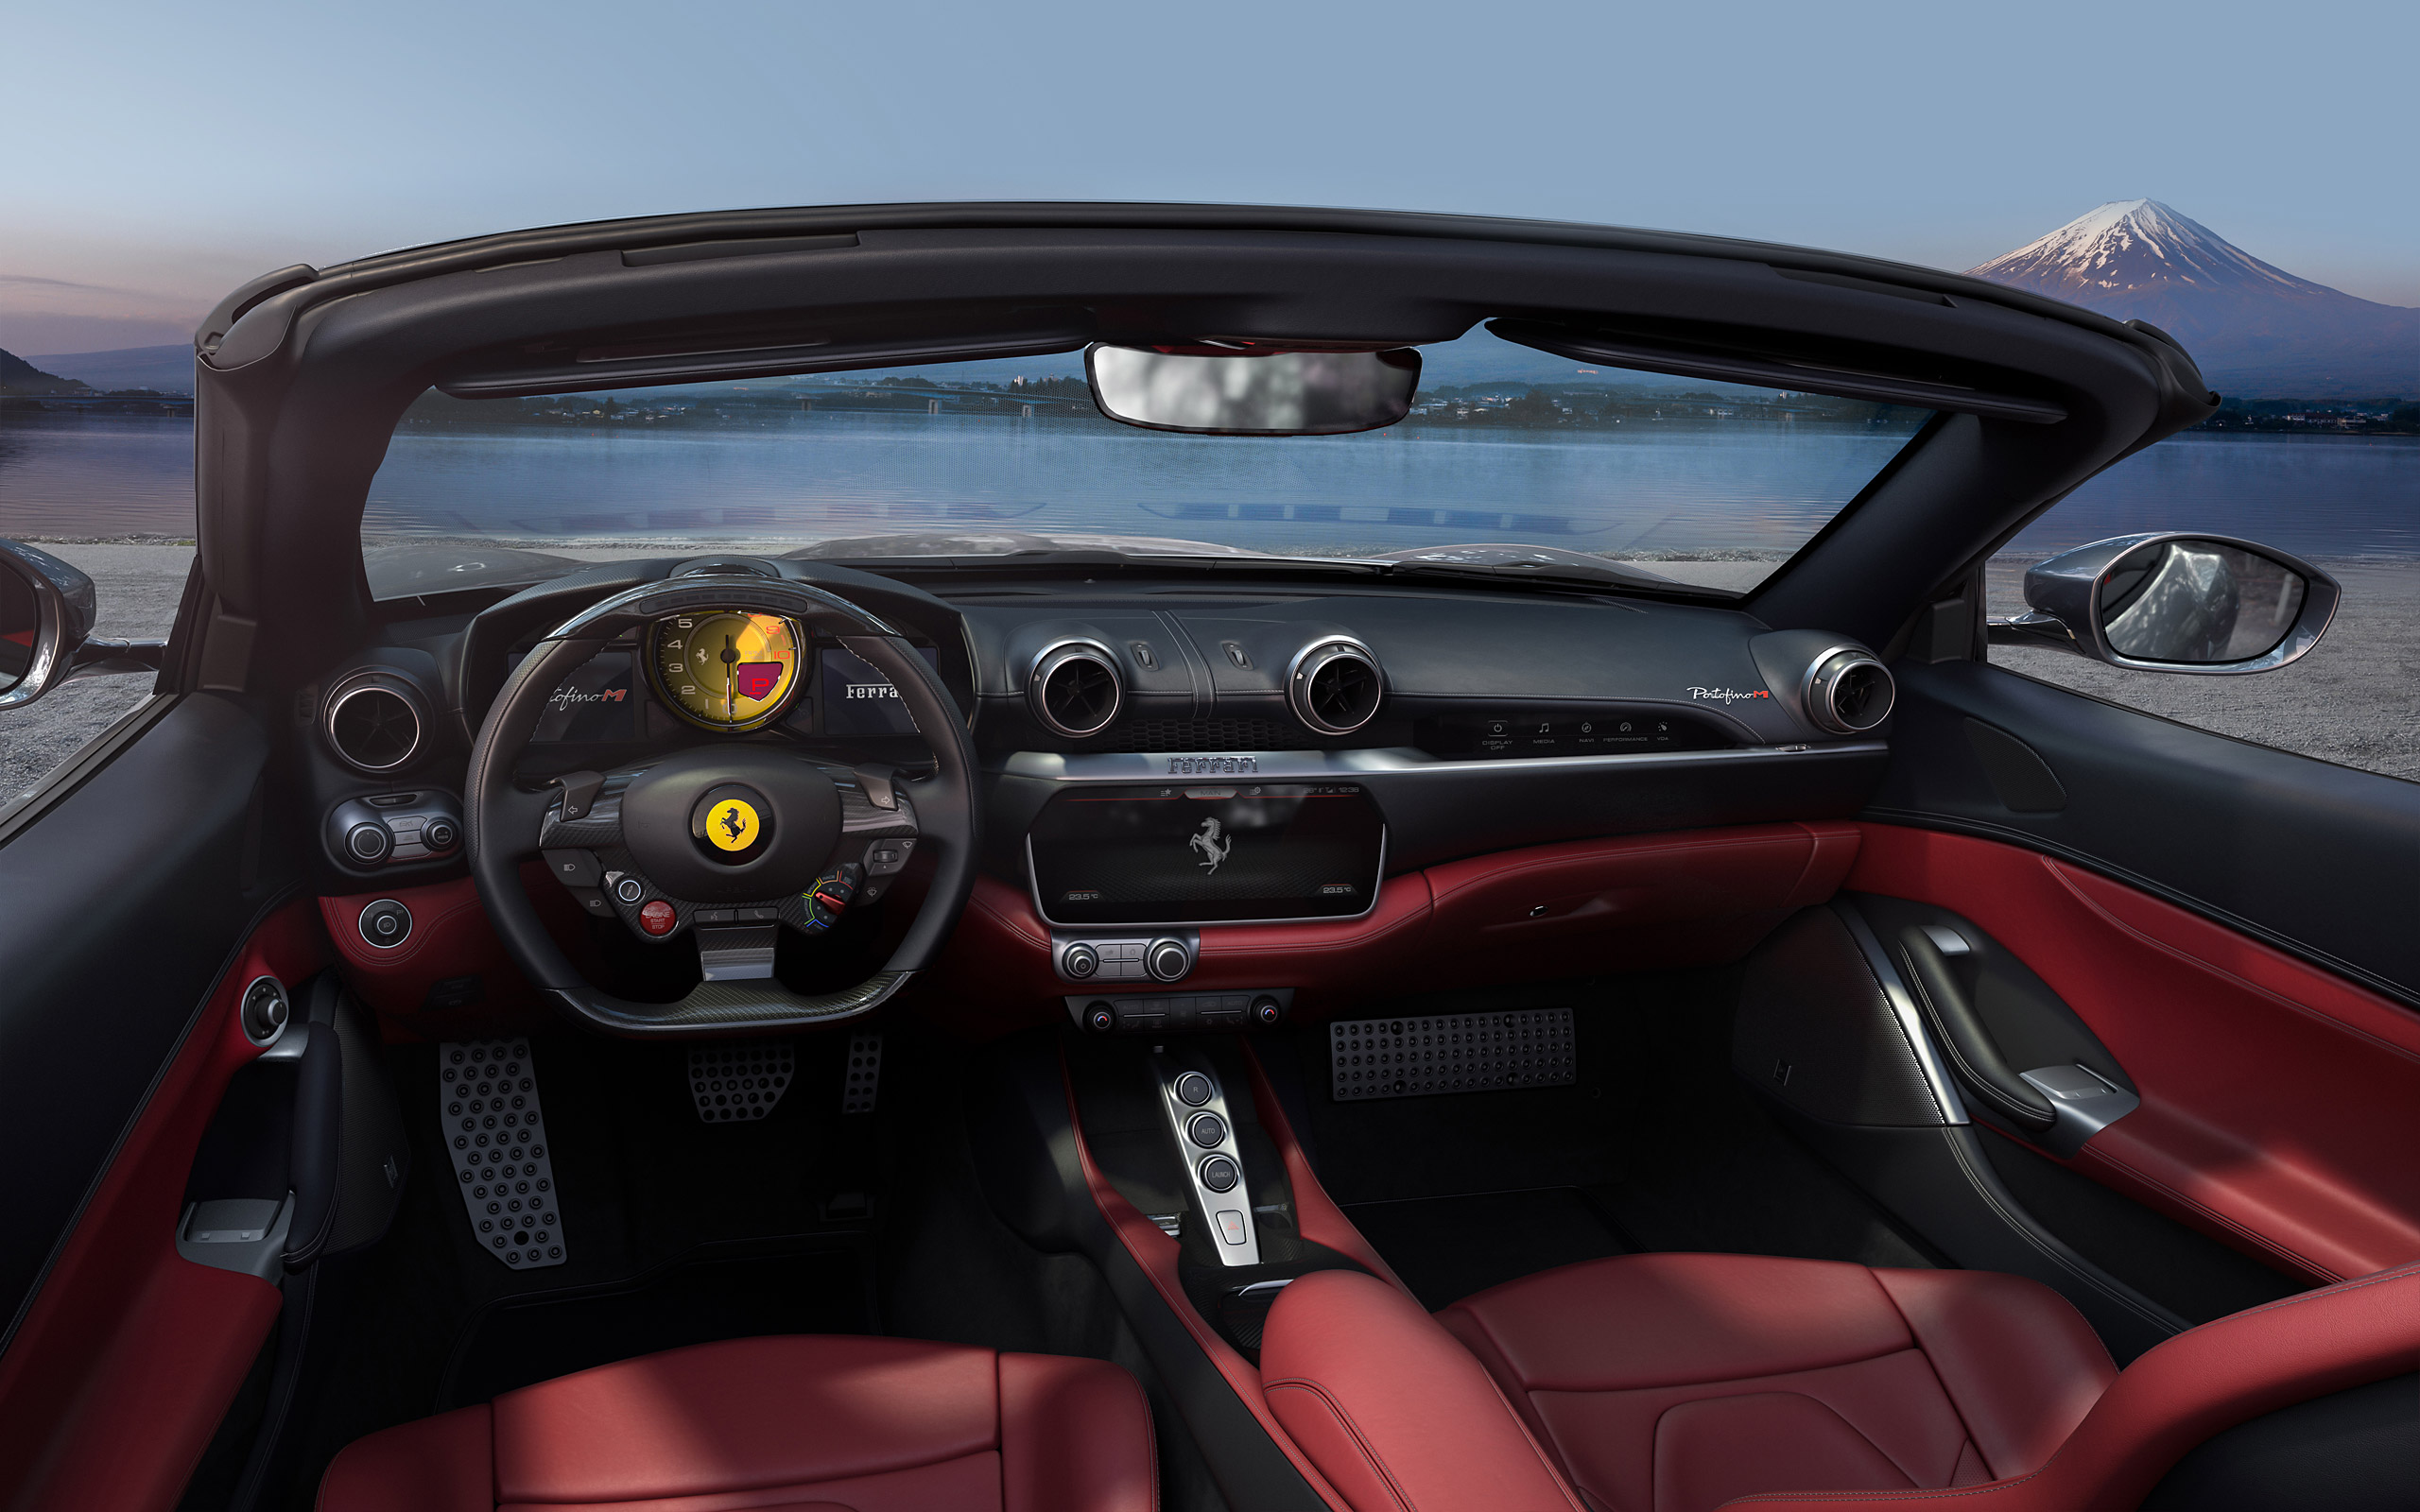  2021 Ferrari Portofino M Wallpaper.